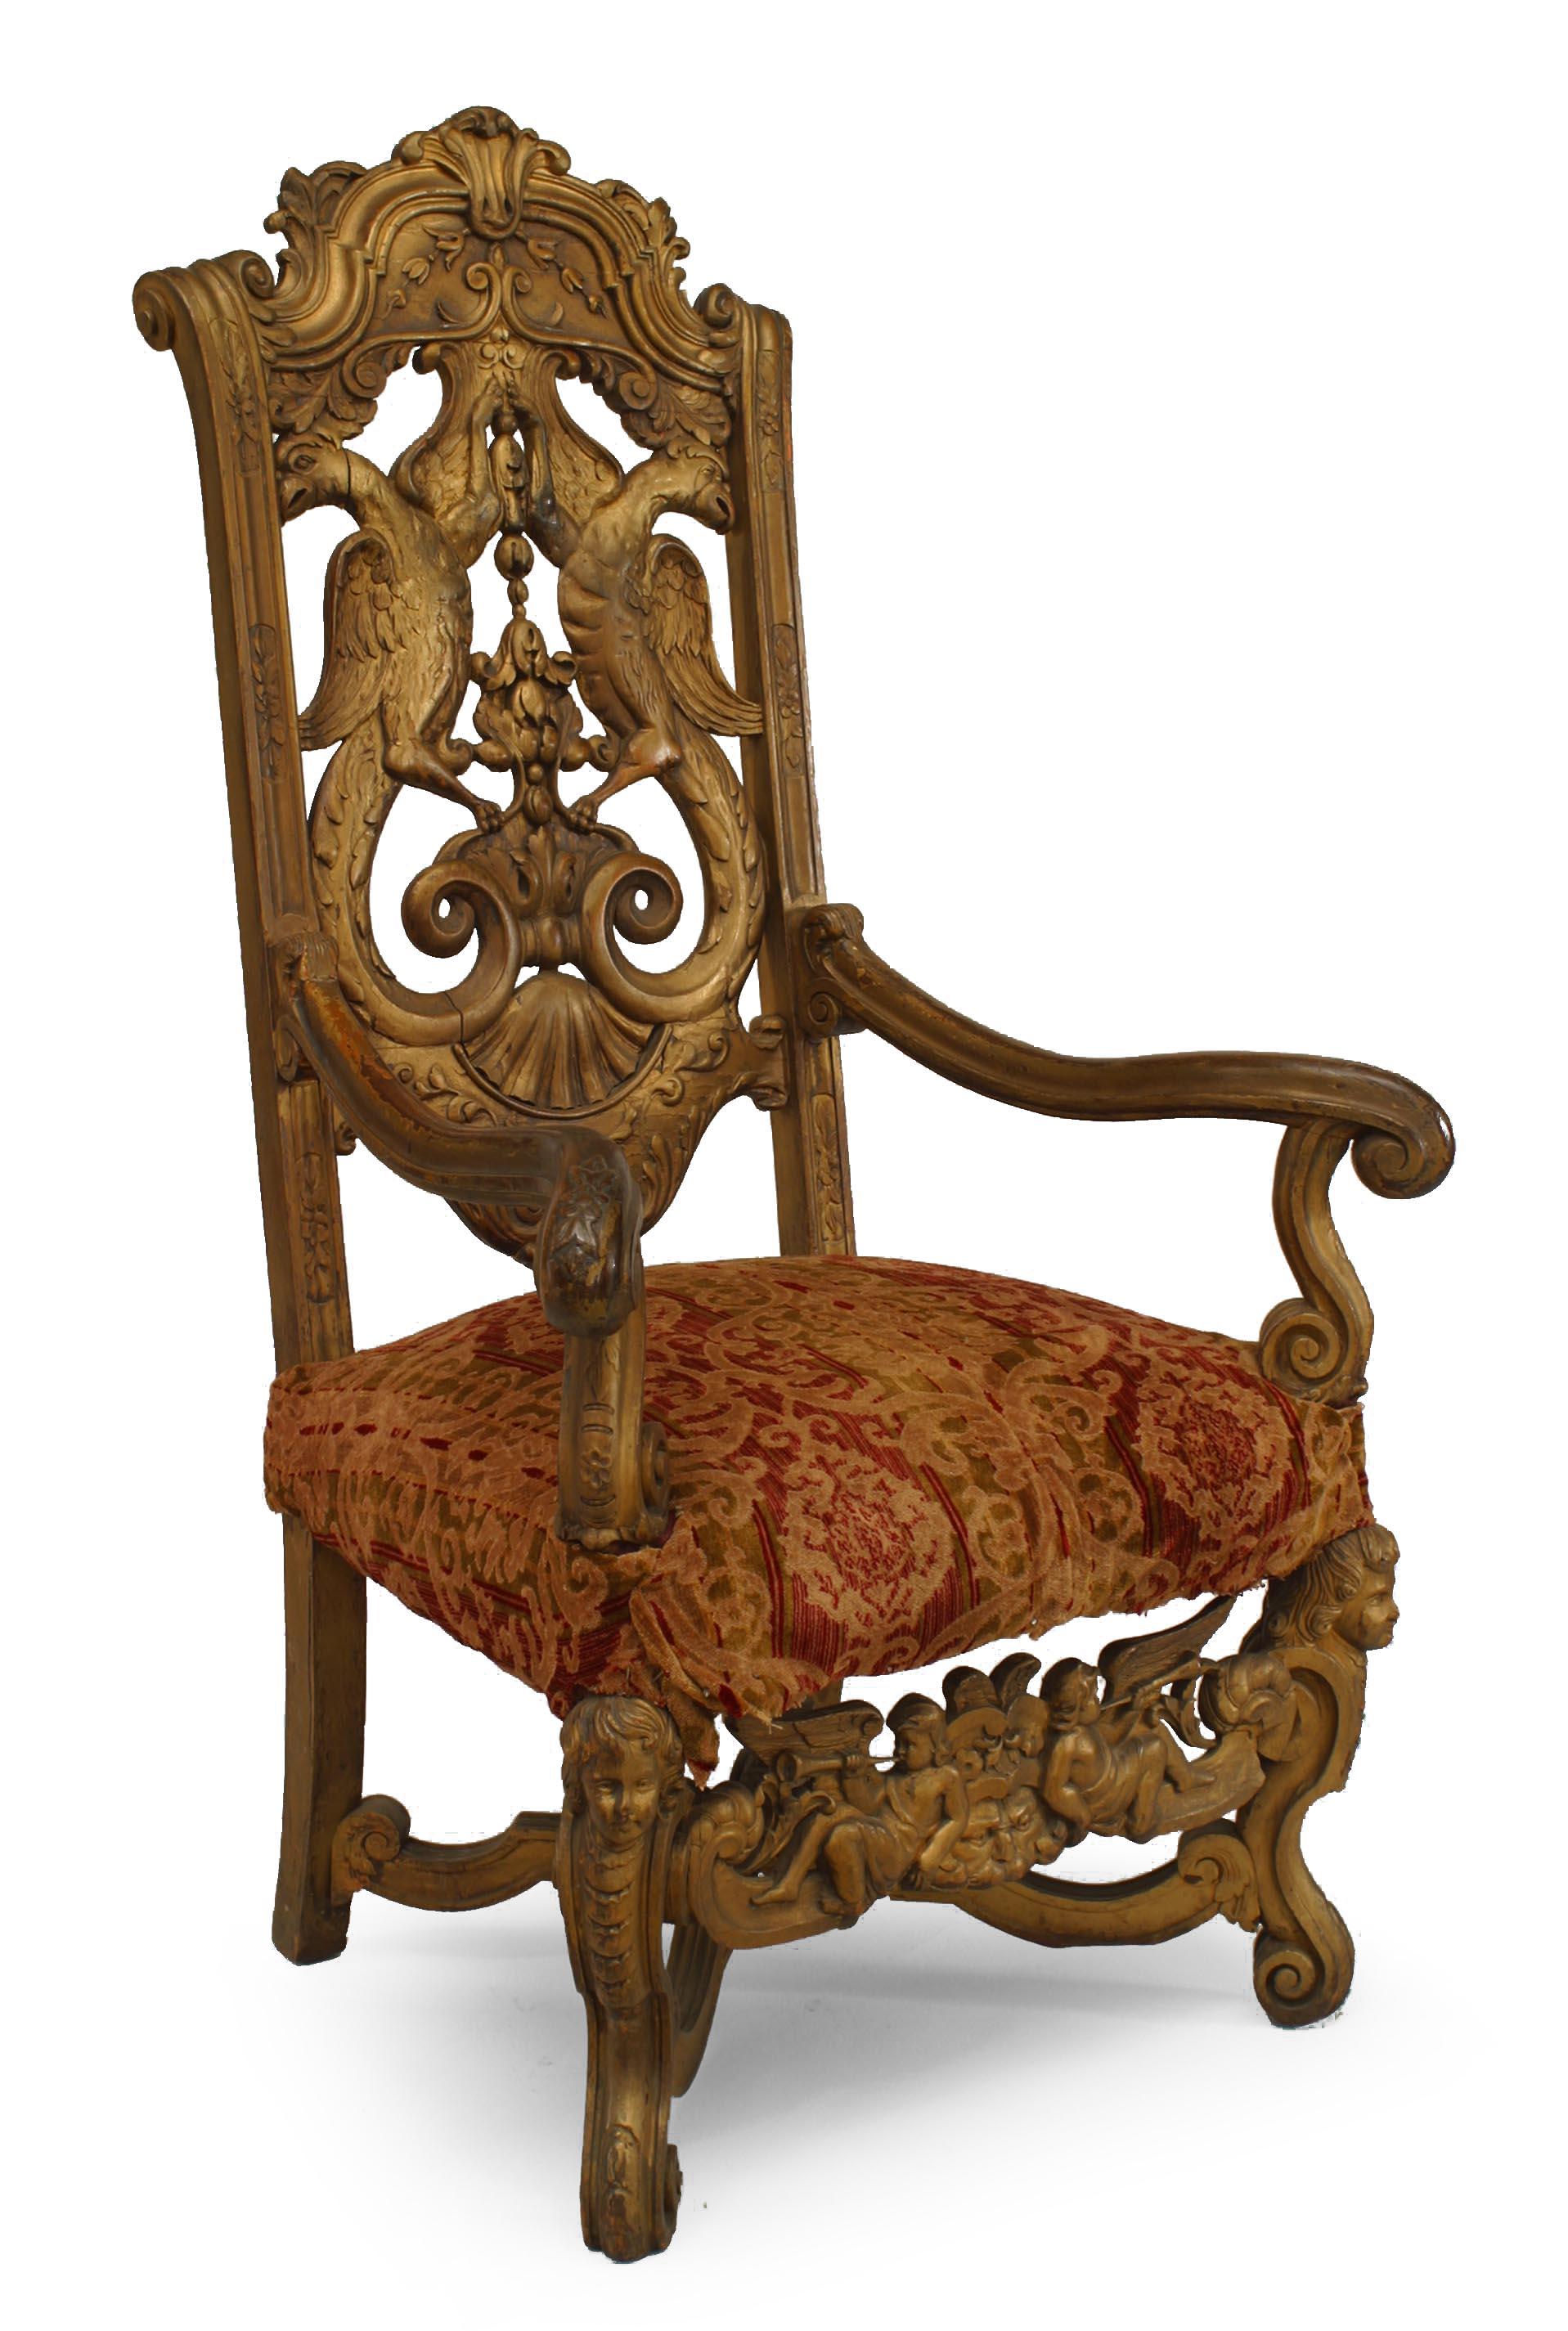 Paire de fauteuils de style rococo italien à dossier d'aigle sculpté et doré à haut dossier, avec traverse en forme de cupidon et assise tapissée, 19e-20e siècle.